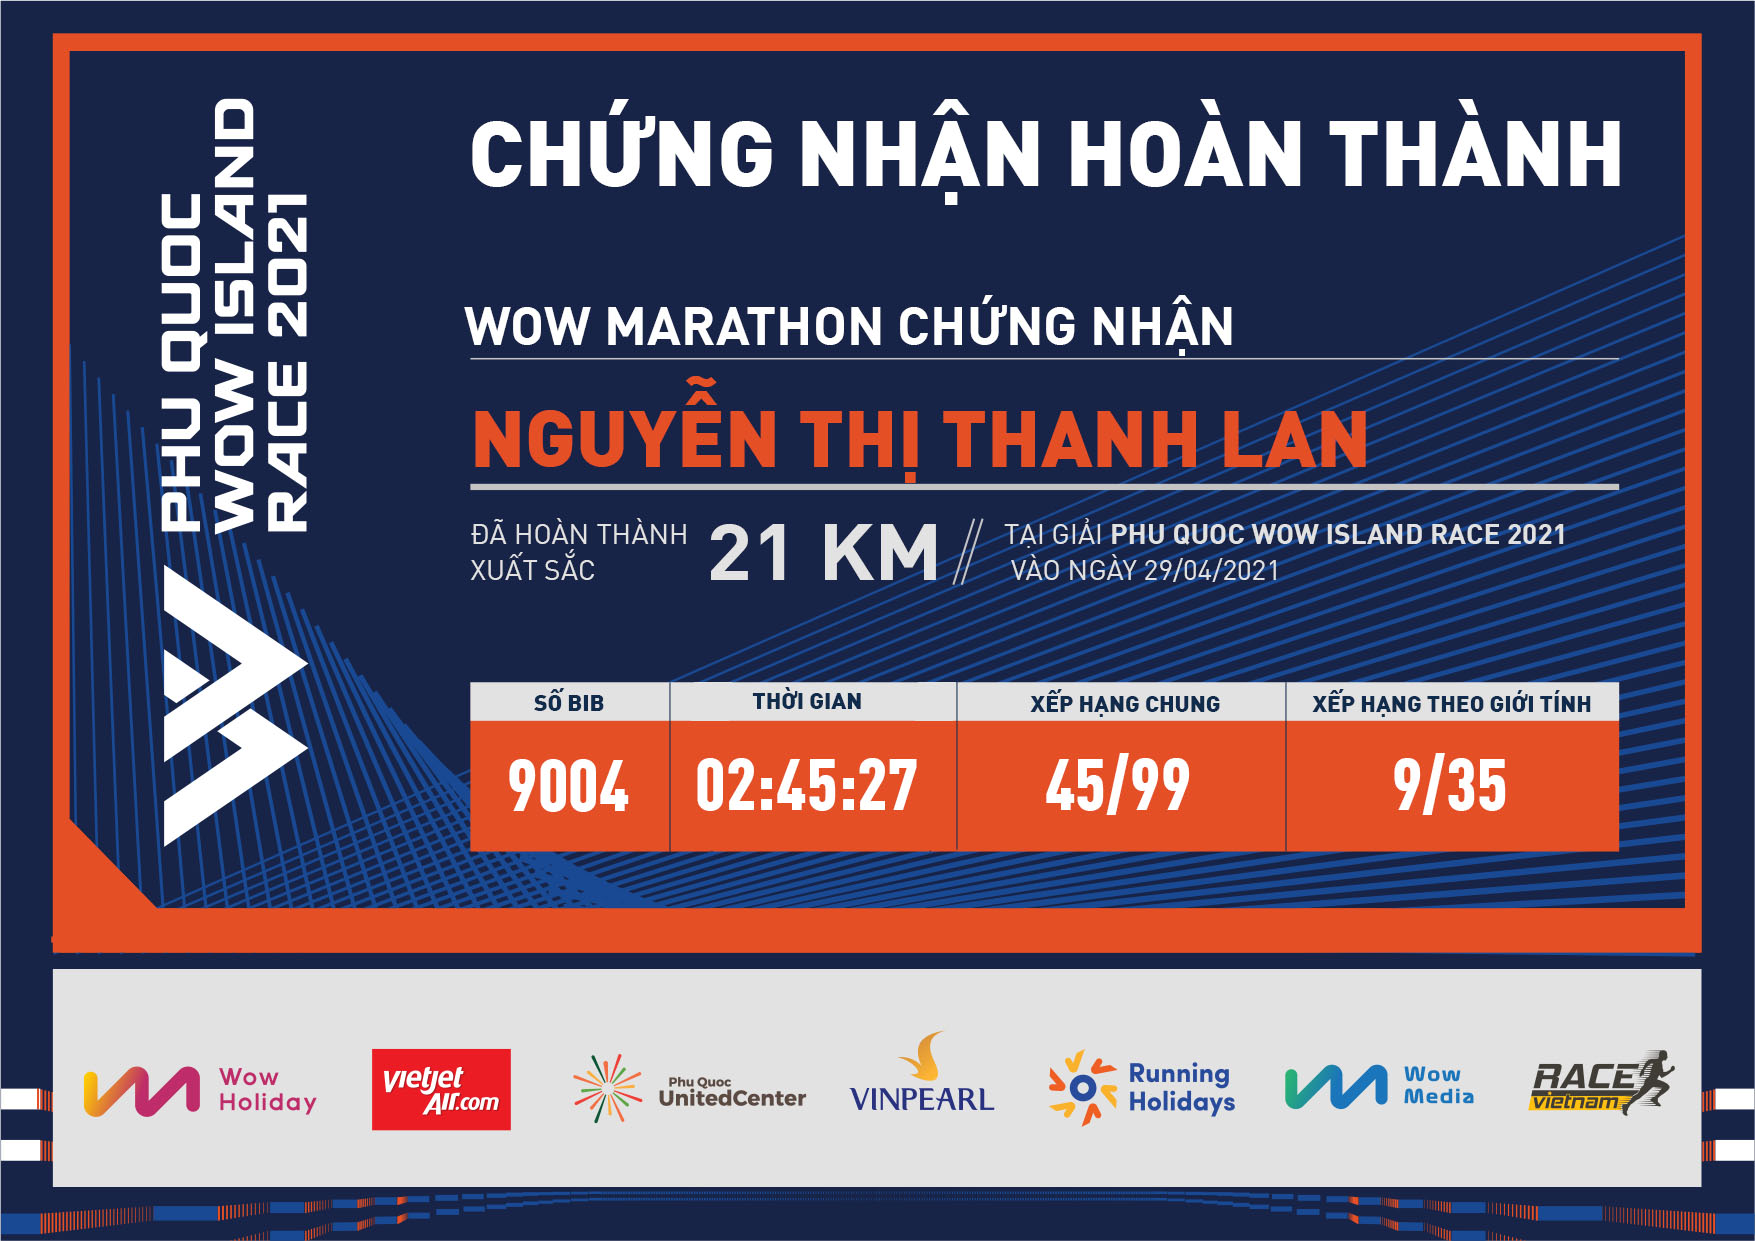 9004 - Nguyễn Thị Thanh Lan